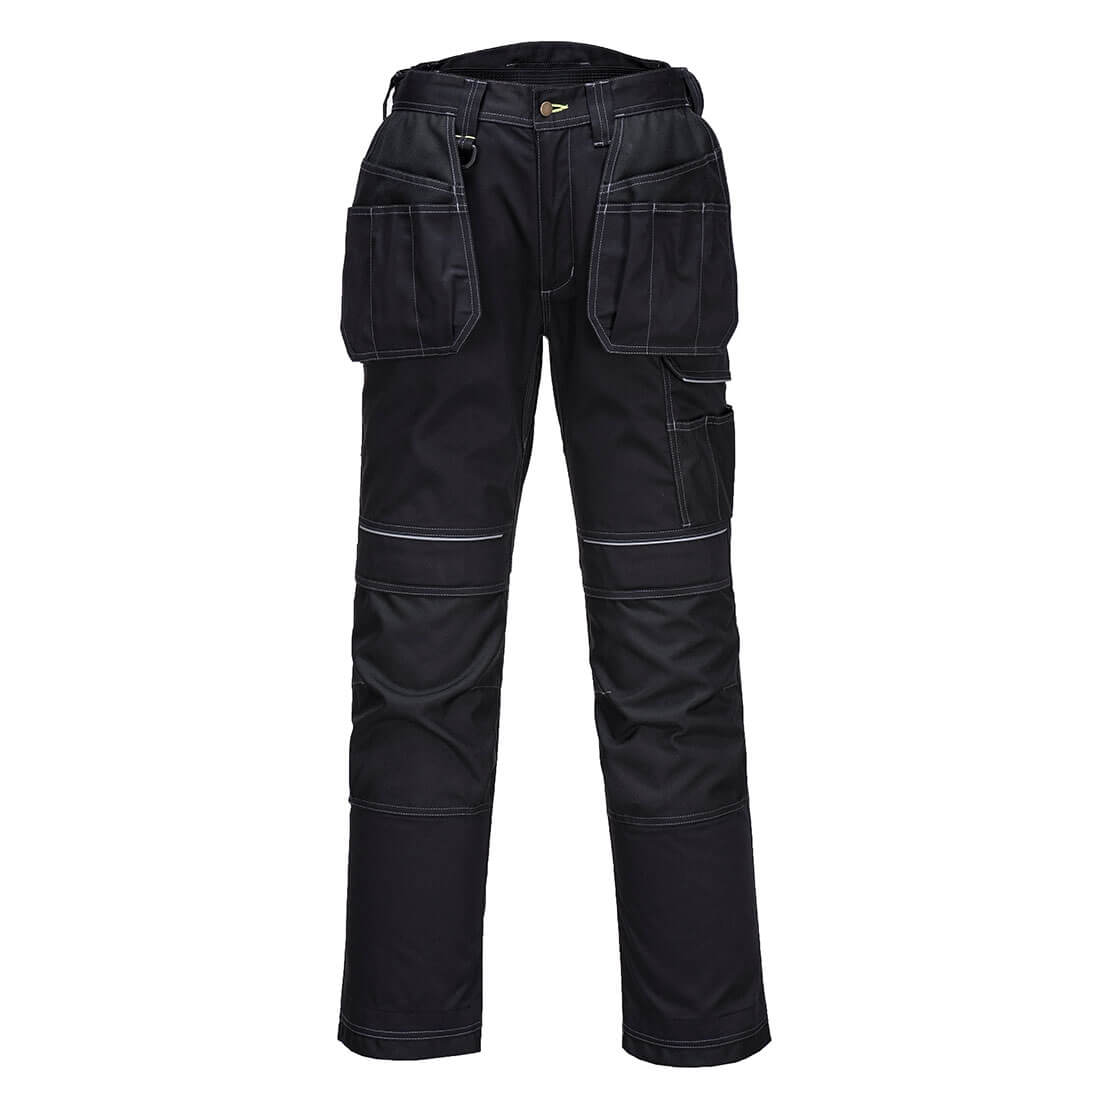 Pantalones de trabajo Urban Holster - Ropa de protección